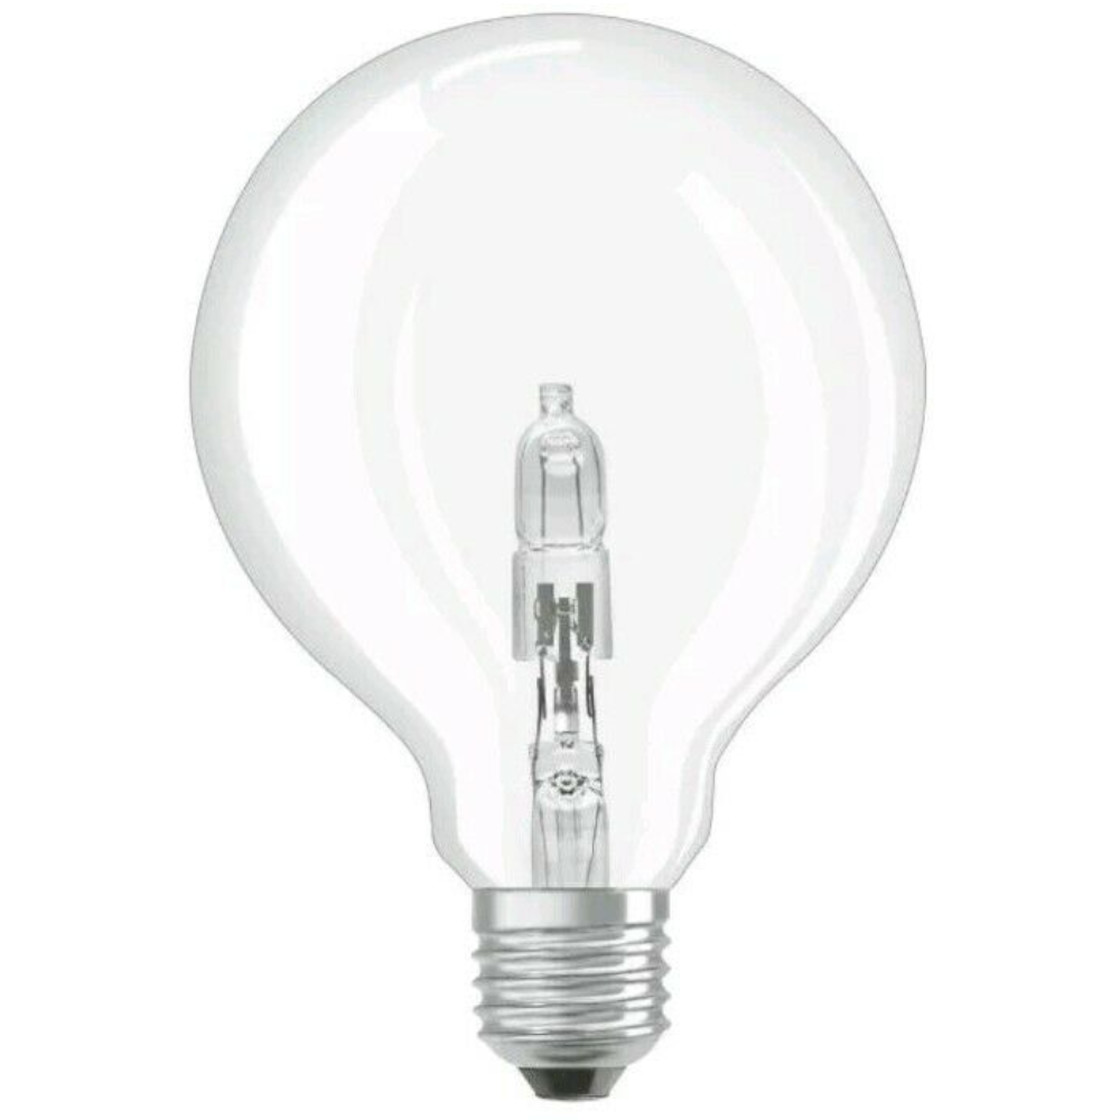 https://www.lampen-rampe.de/media/image/product/78740/lg/osram-halogen-lampe-globe-g95-leuchtmittel-e27-dimmbar-57w75w-warmweiss-glas.jpg